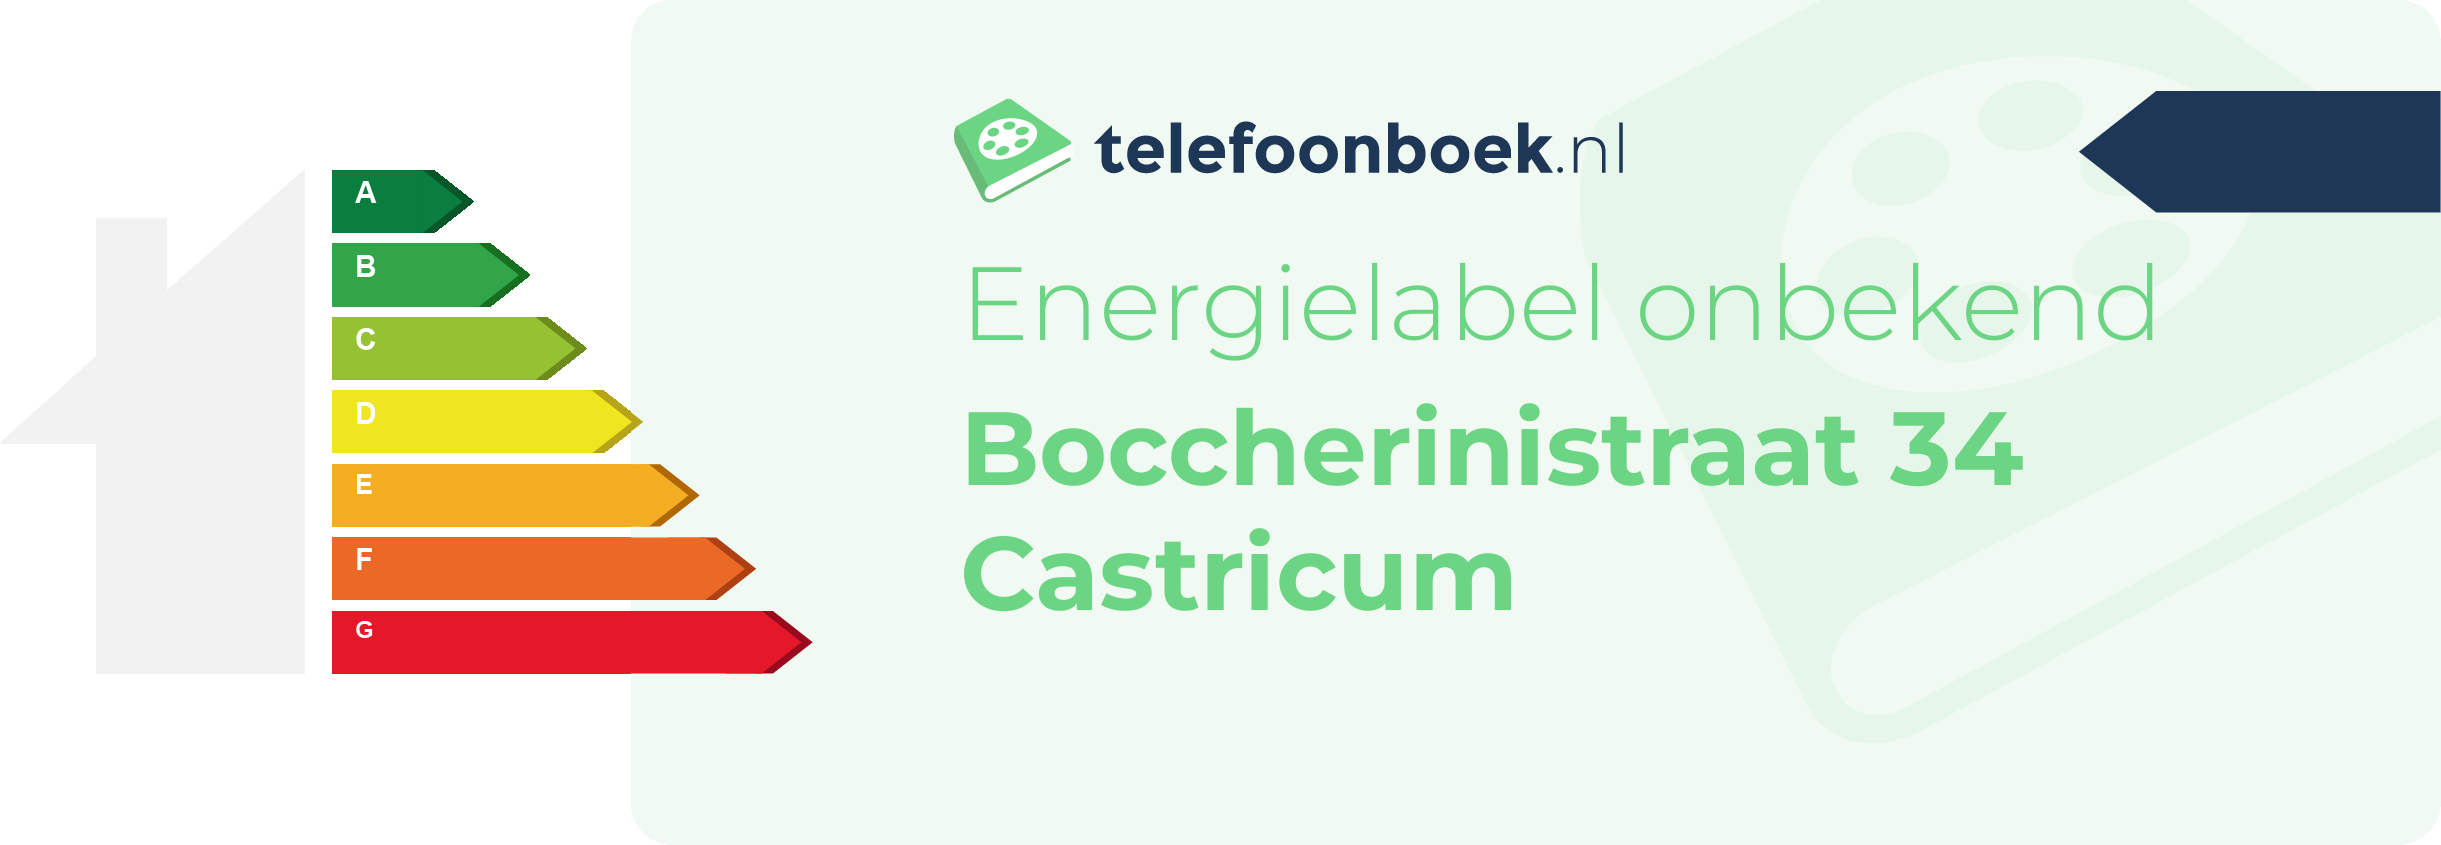 Energielabel Boccherinistraat 34 Castricum